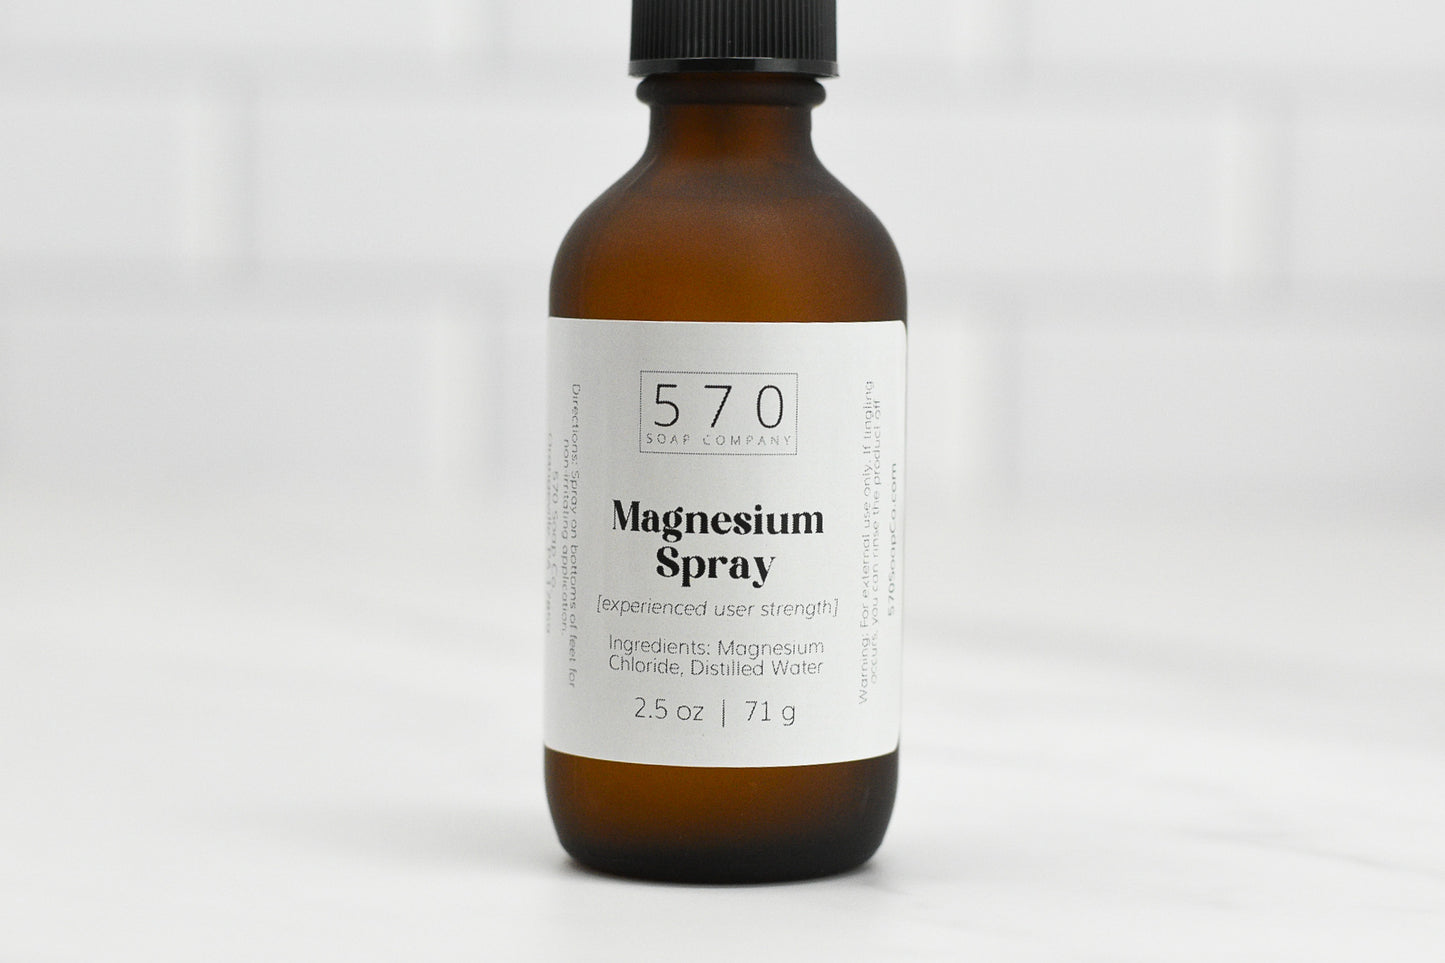 Magnesium Spray (experienced user strength)